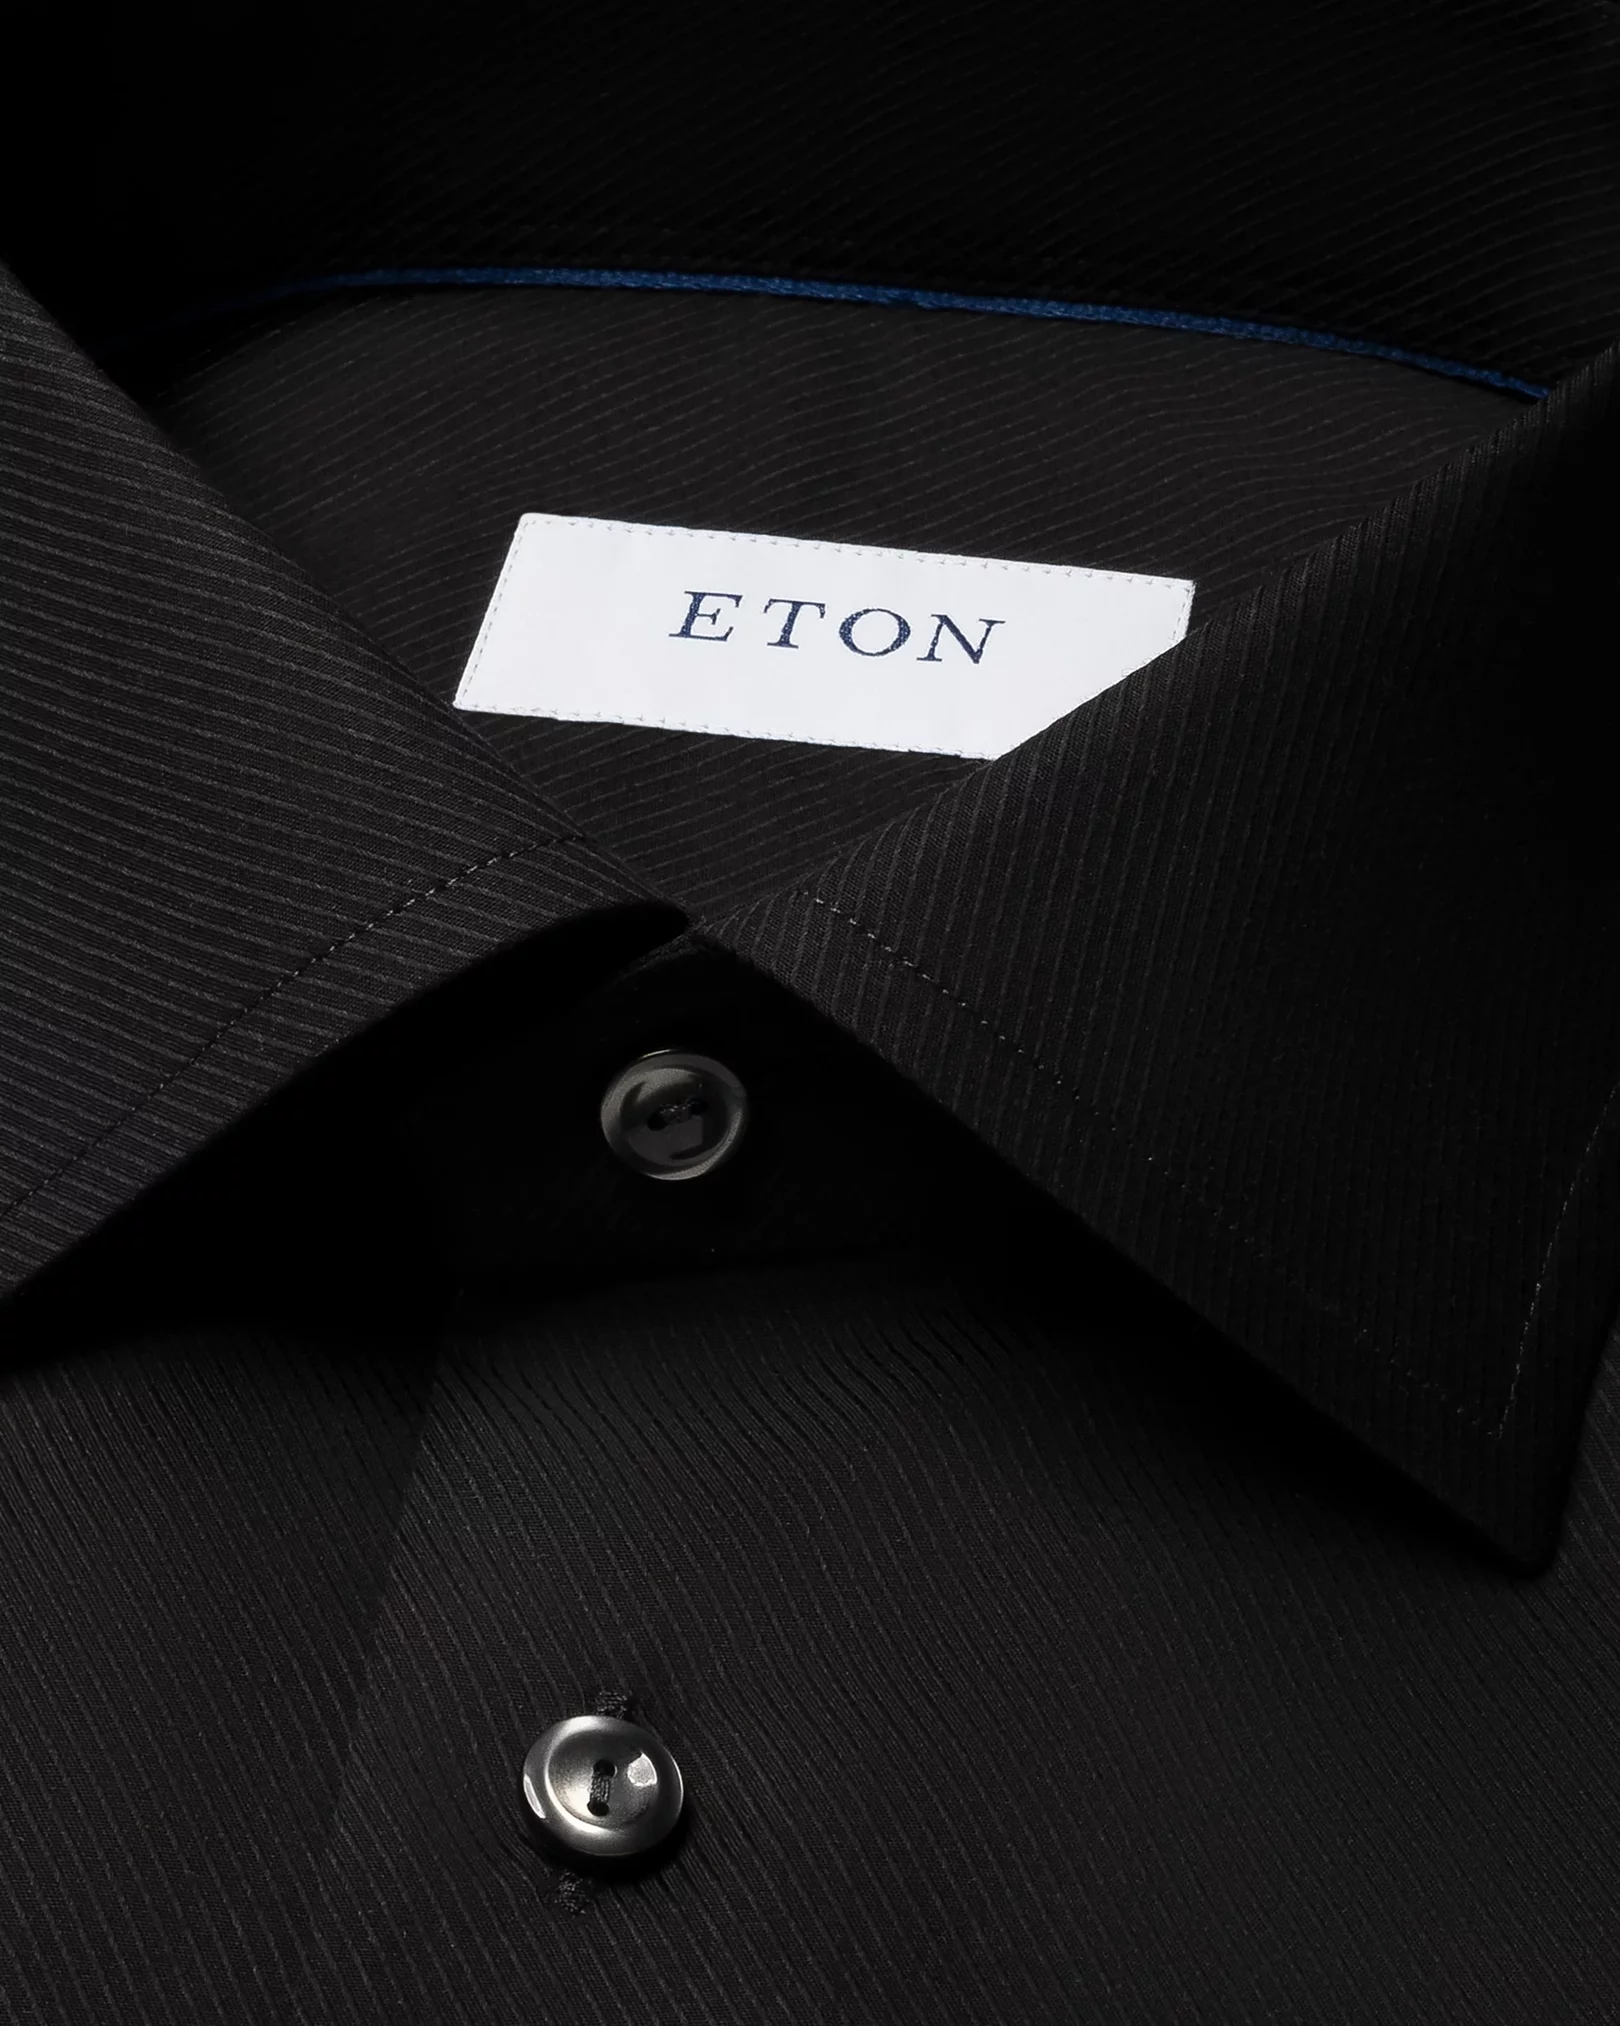 Eton - black twill made to order